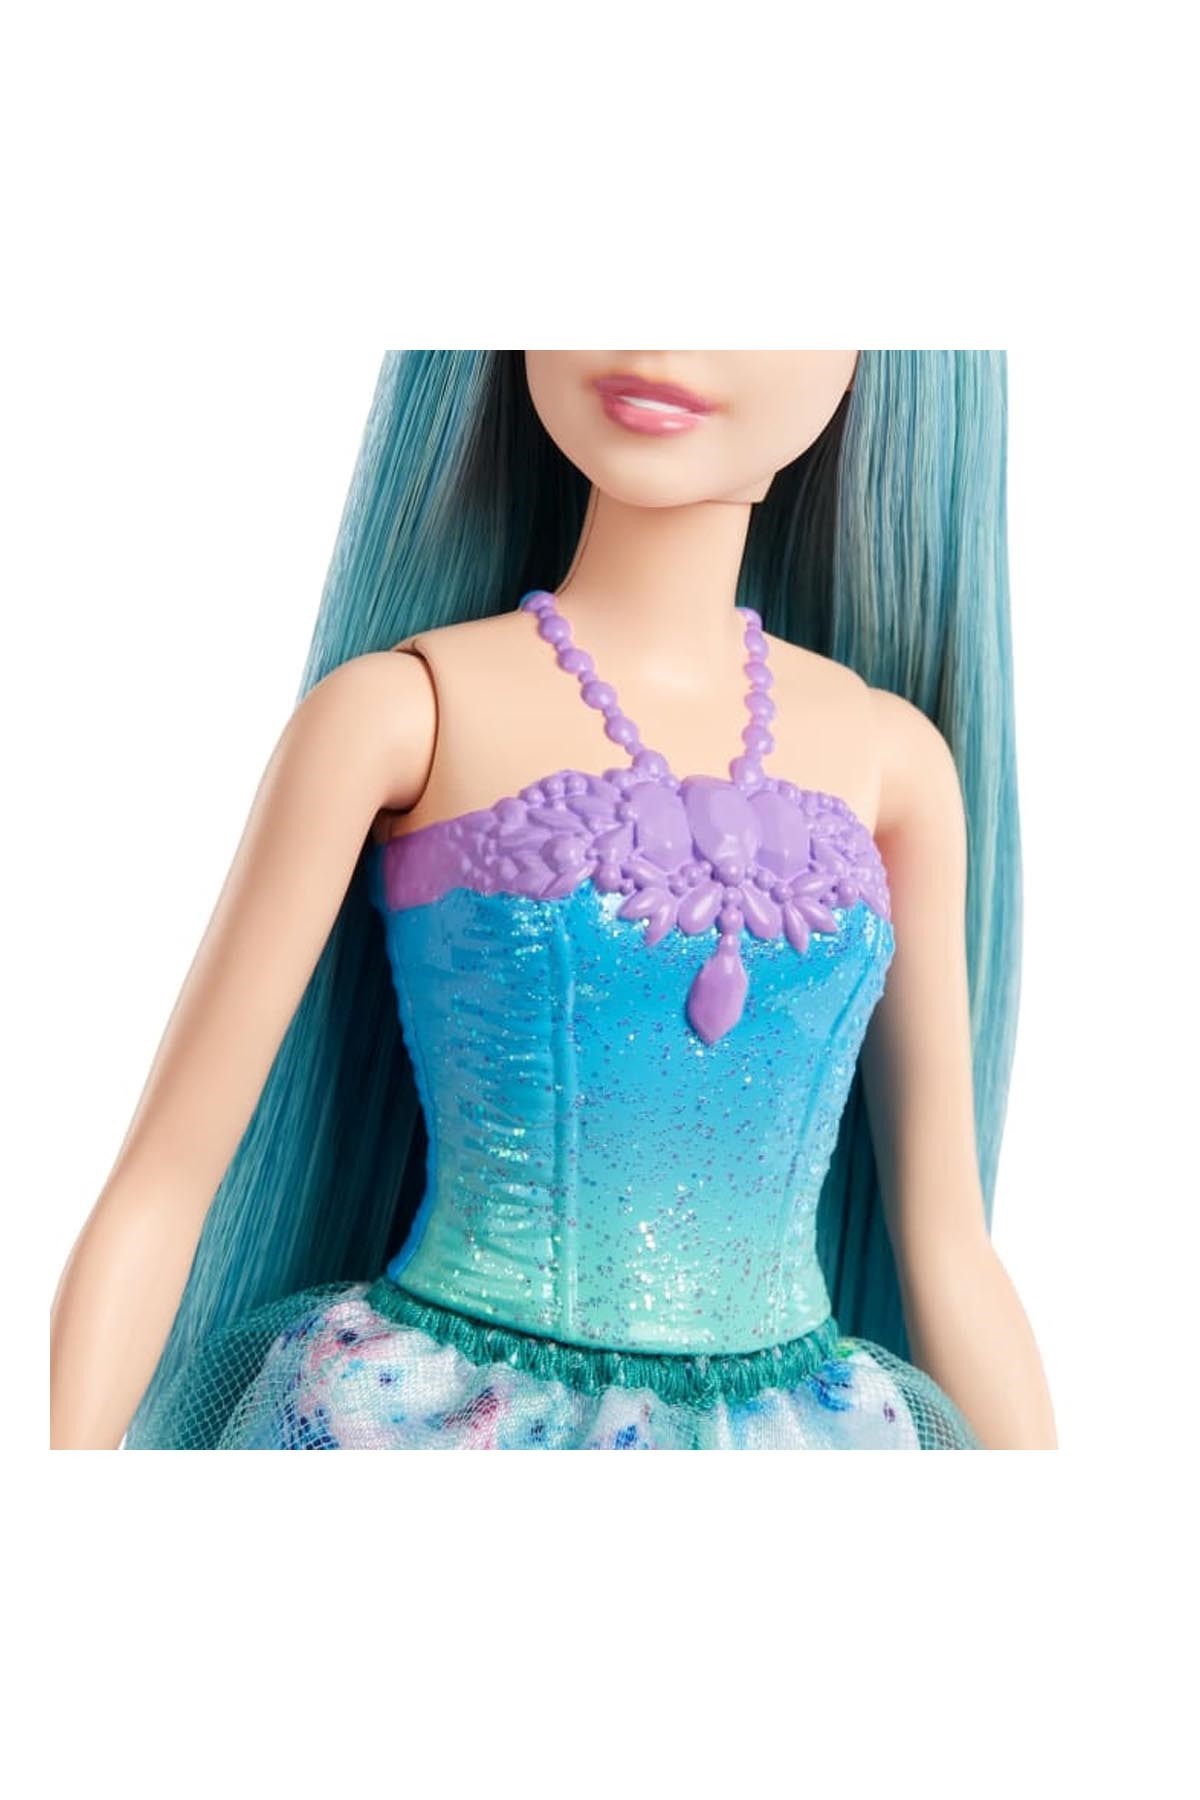 Barbie Dreamtopia Prenses Bebekler Serisi HGR16